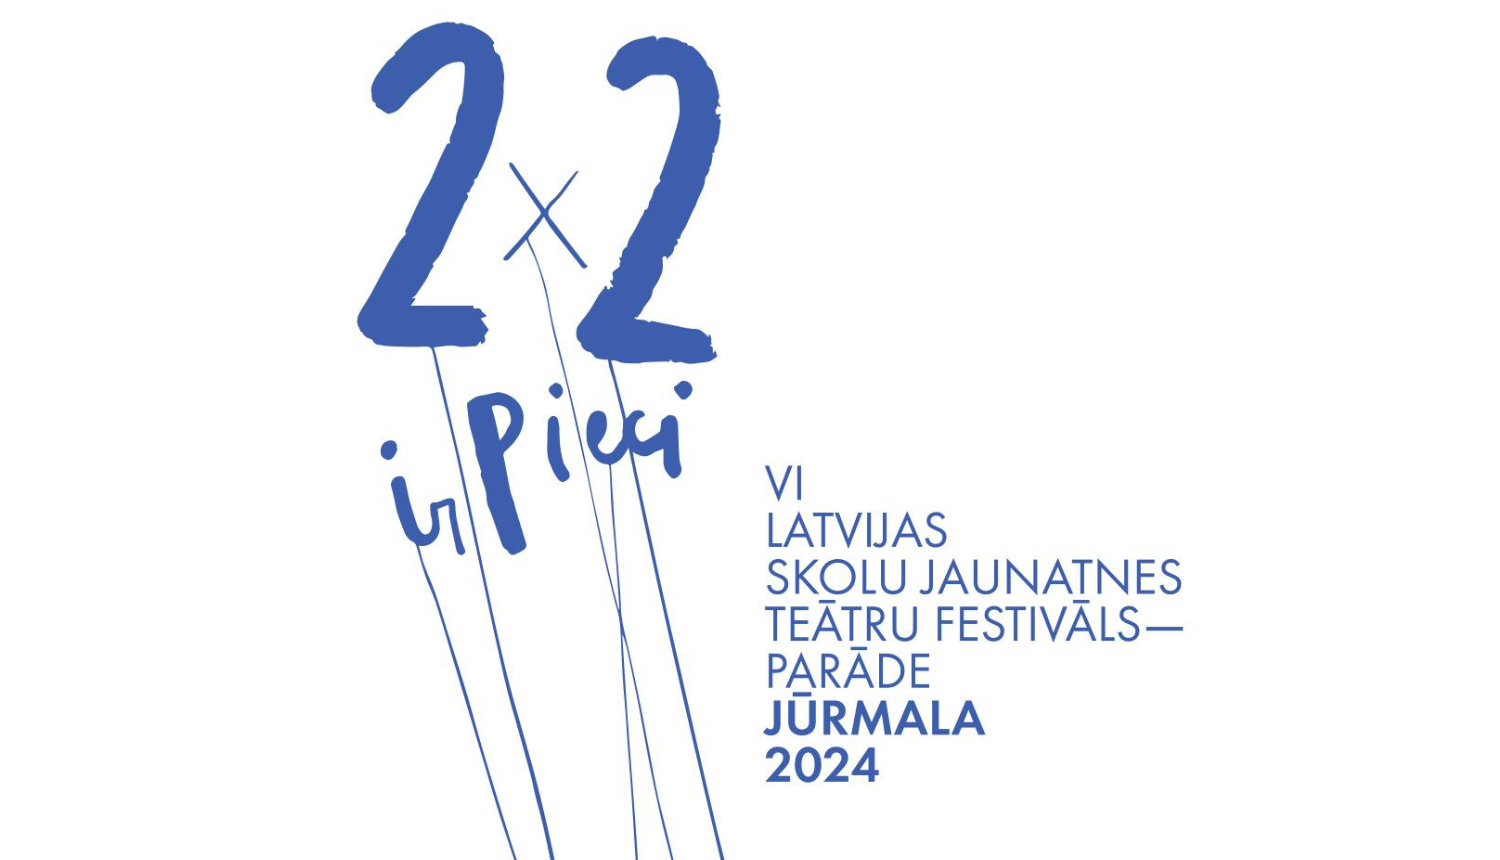 Plakāts ar tekstu "2X2 ir Pieci - VI Latvijas skolu jaunatnes teātru festivāls-parāde Jūrmala 2024"